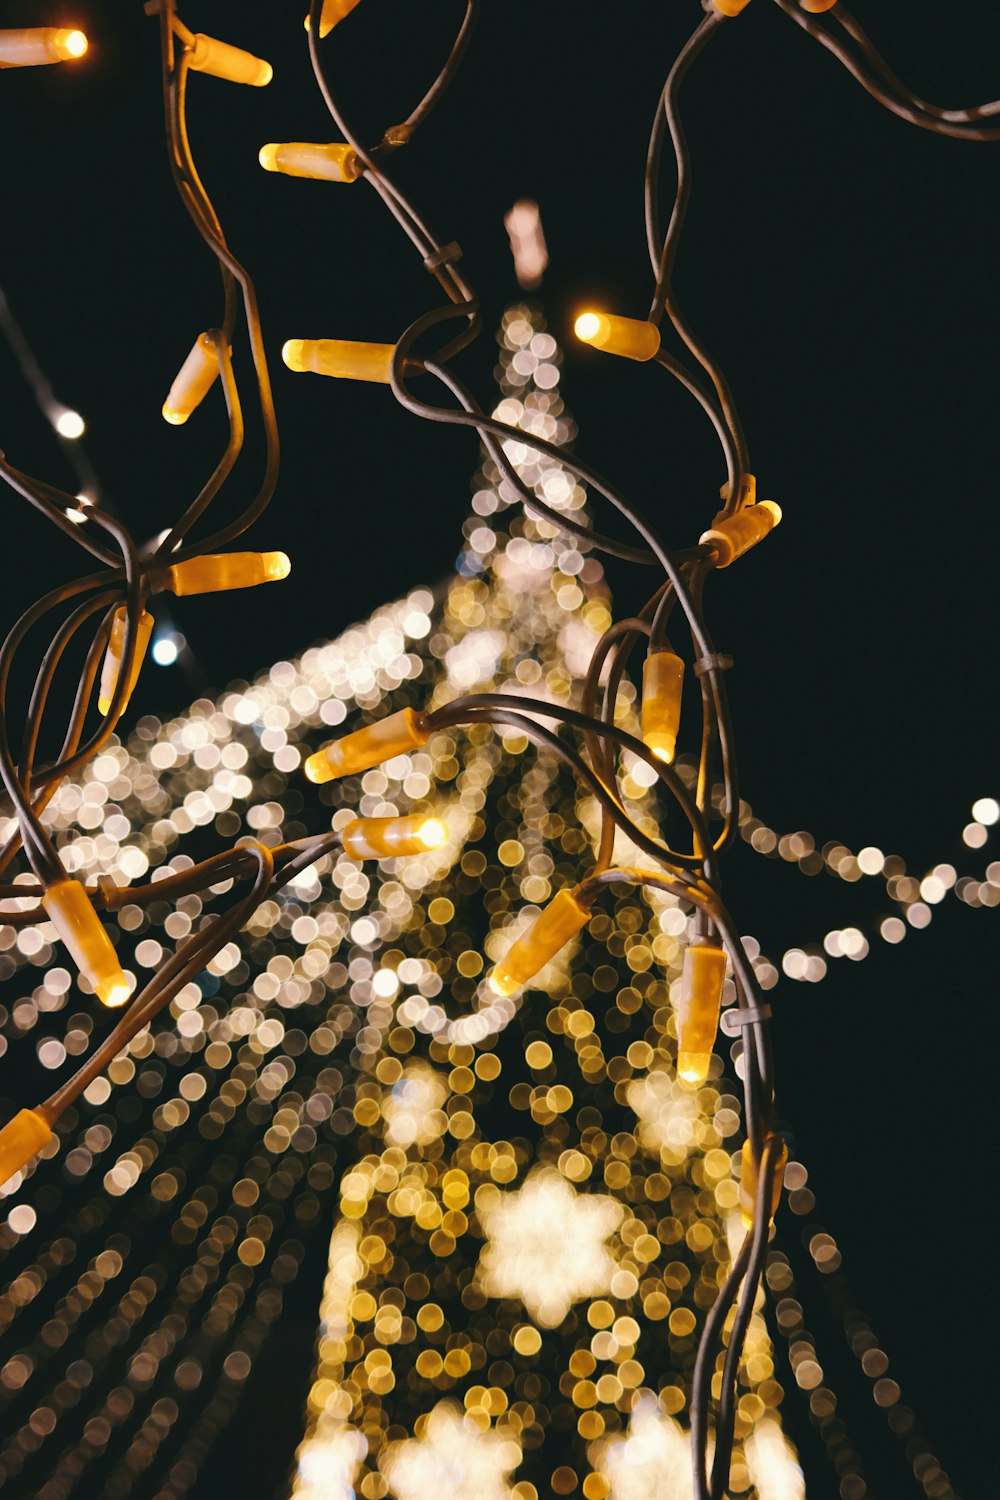 Uma foto borrada de uma árvore de Natal cheia de luzes.